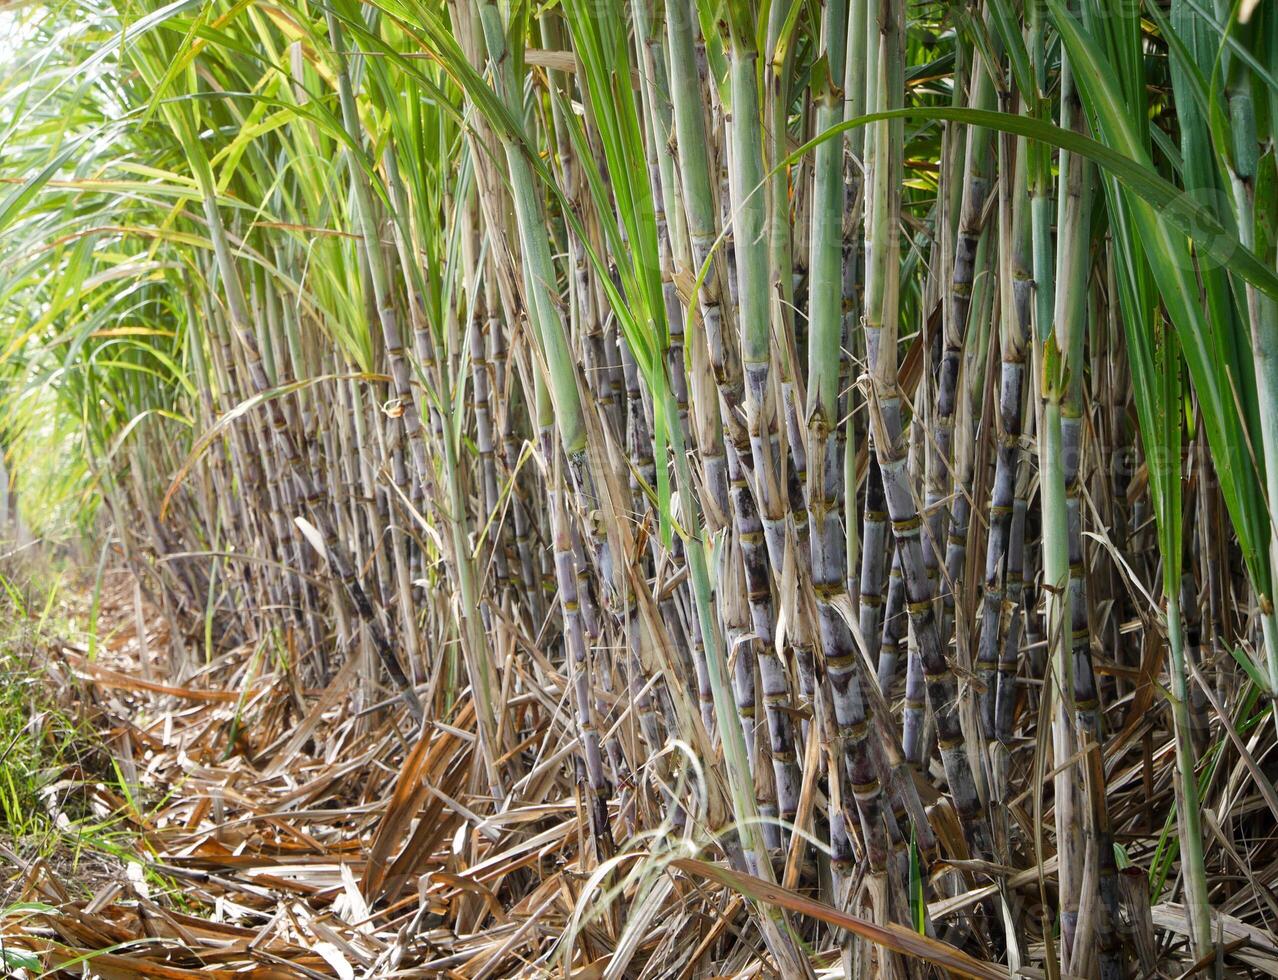 suikerstok plantages, de landbouw tropisch fabriek in Thailand foto